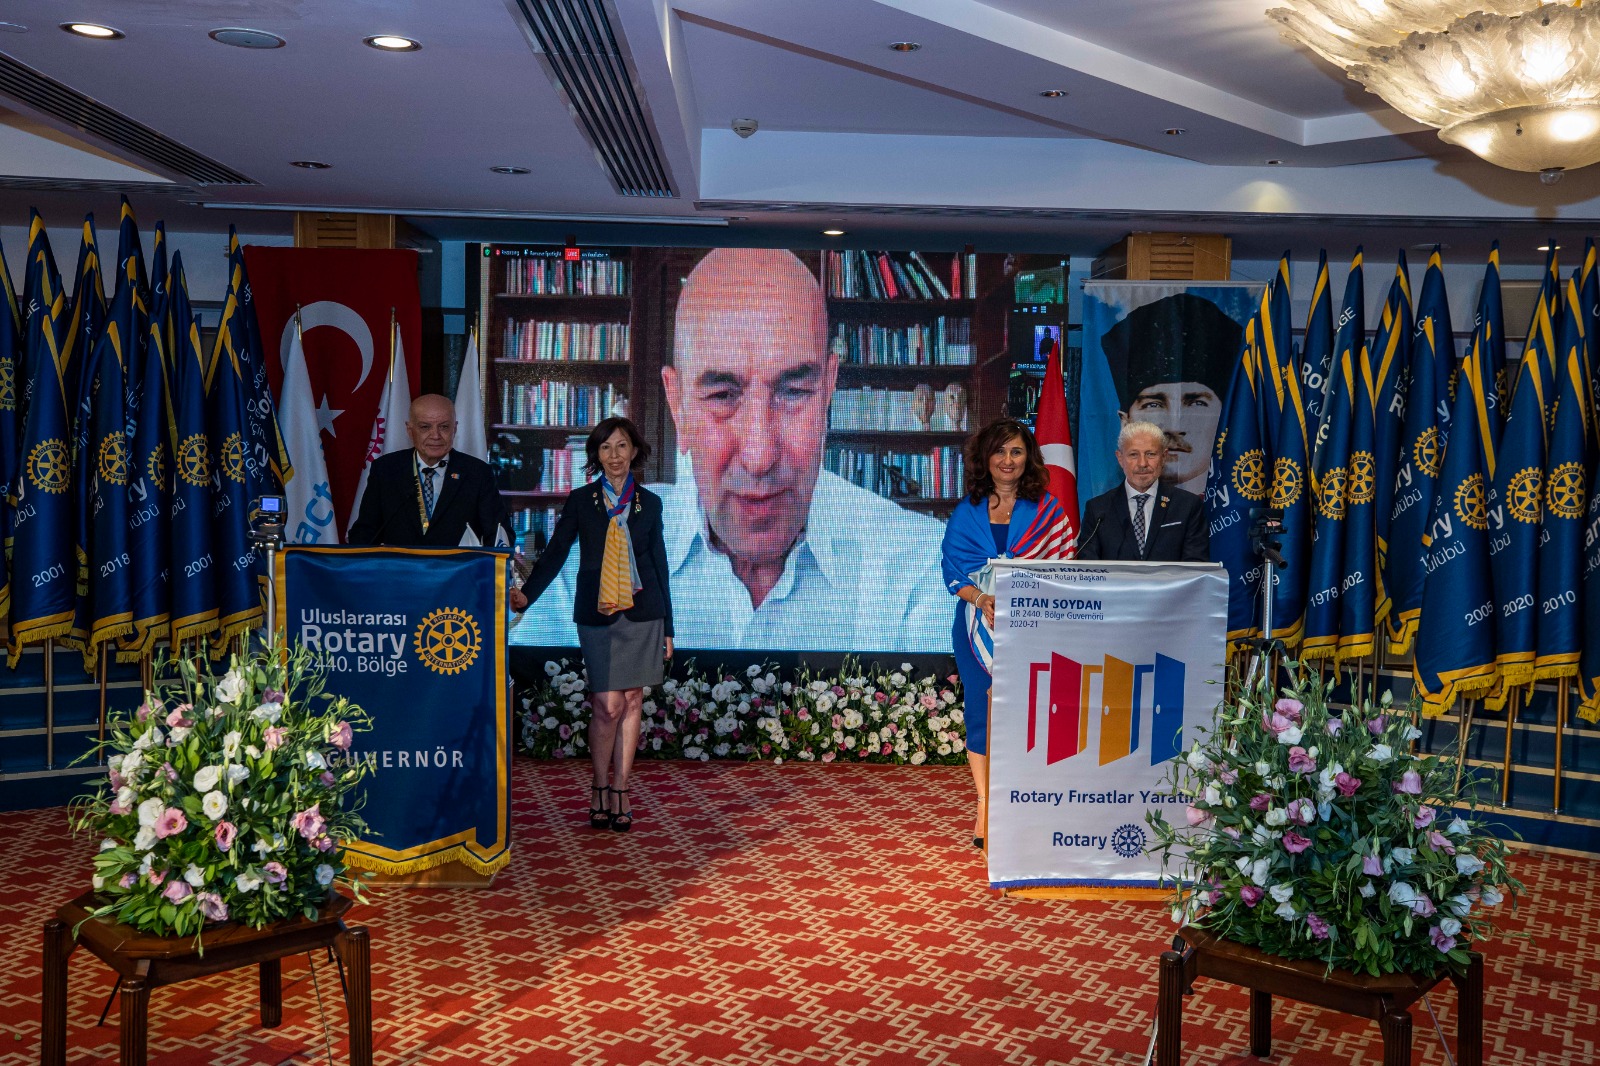  İzmir Büyüşehir Başkanı Soyer’e, ‘Meslek Hizmet Ödülü’ Verildi